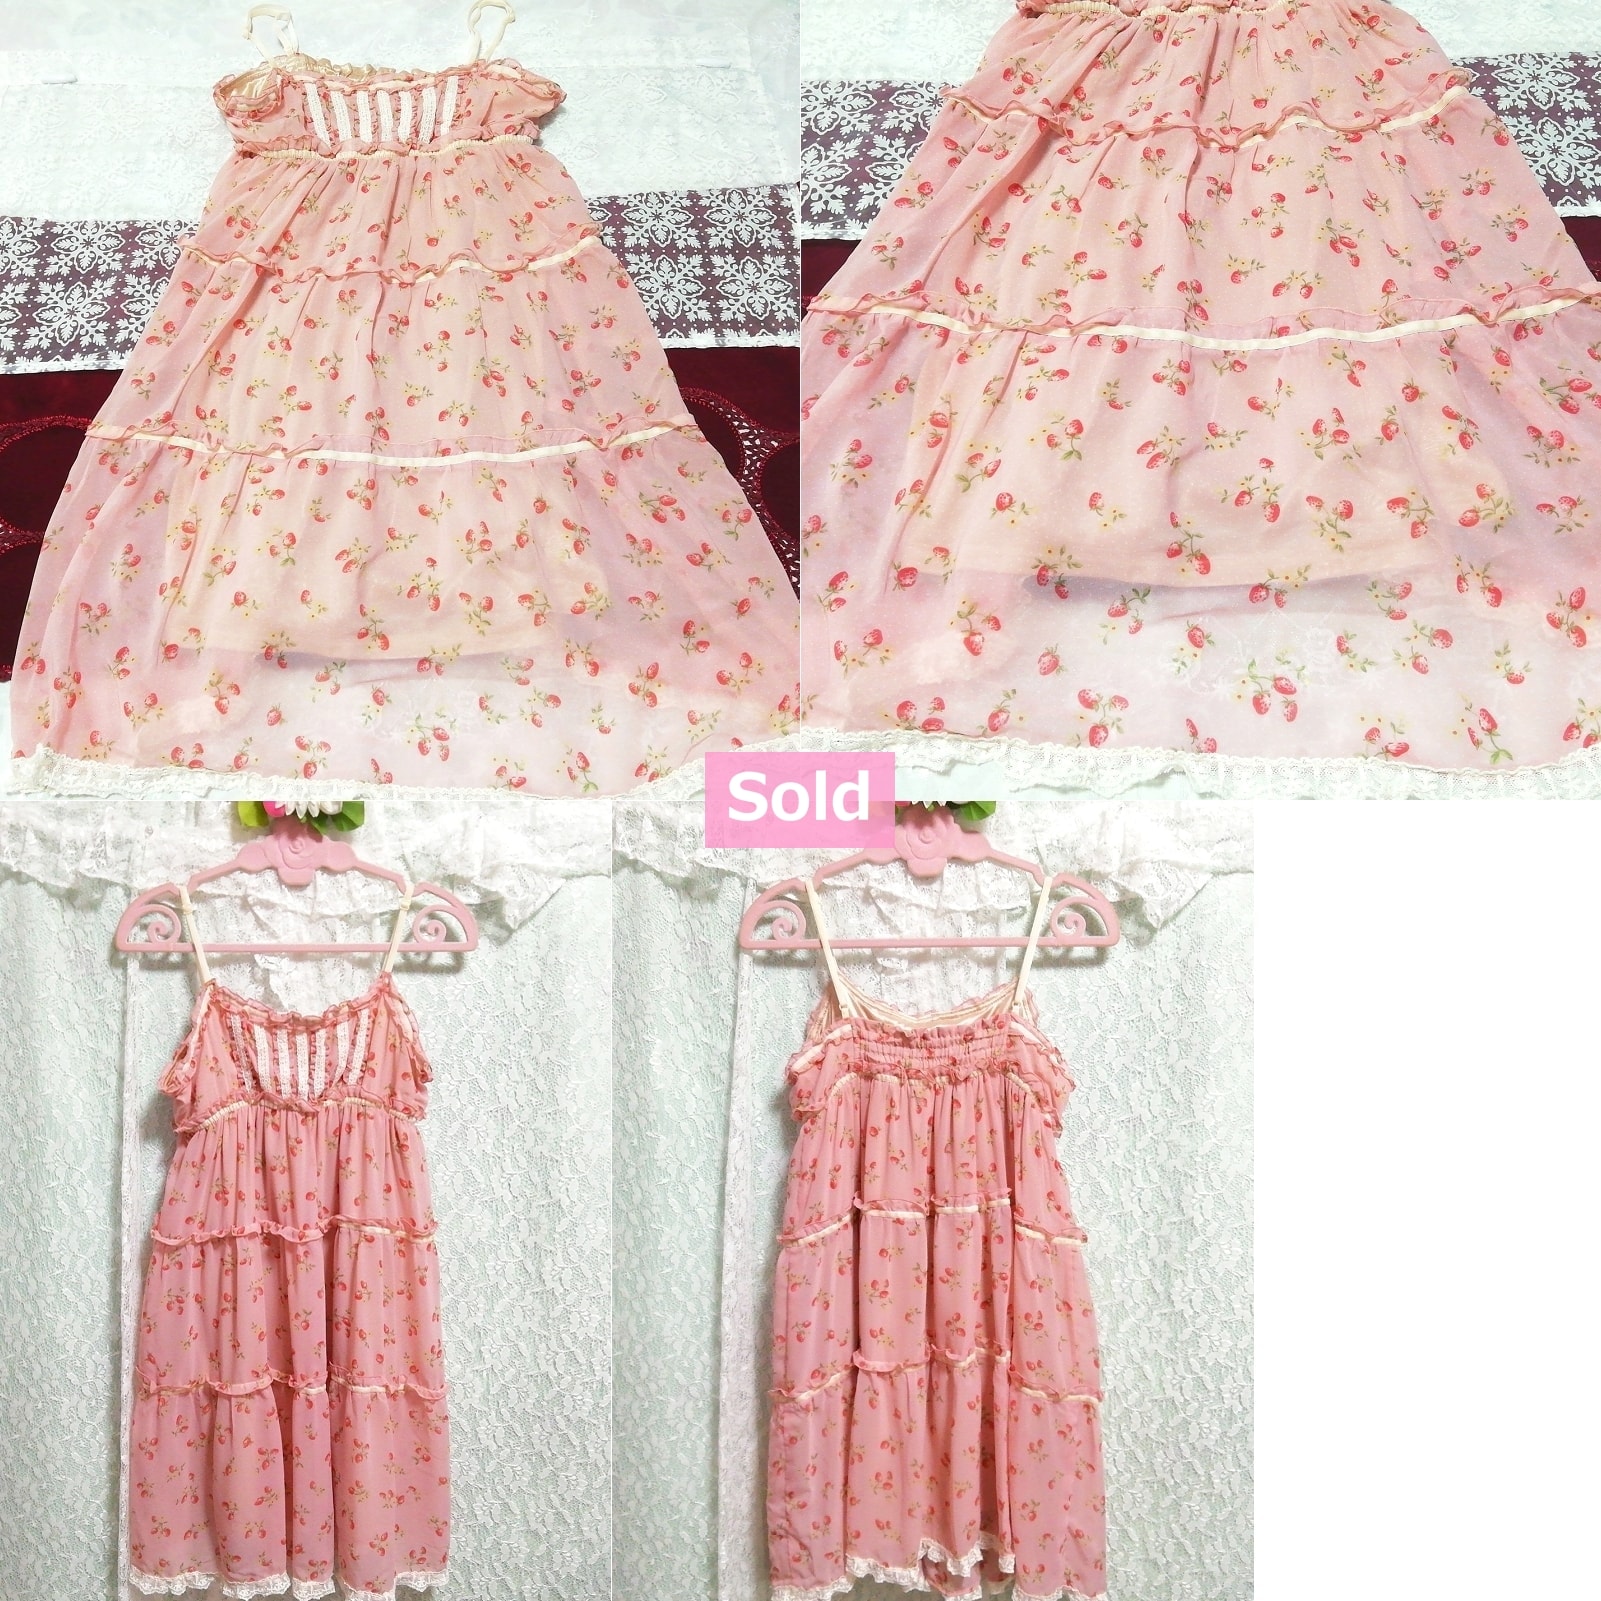 Pink cherry pattern white lace chiffon nightgown camisole dress, fashion, ladies' fashion, camisole